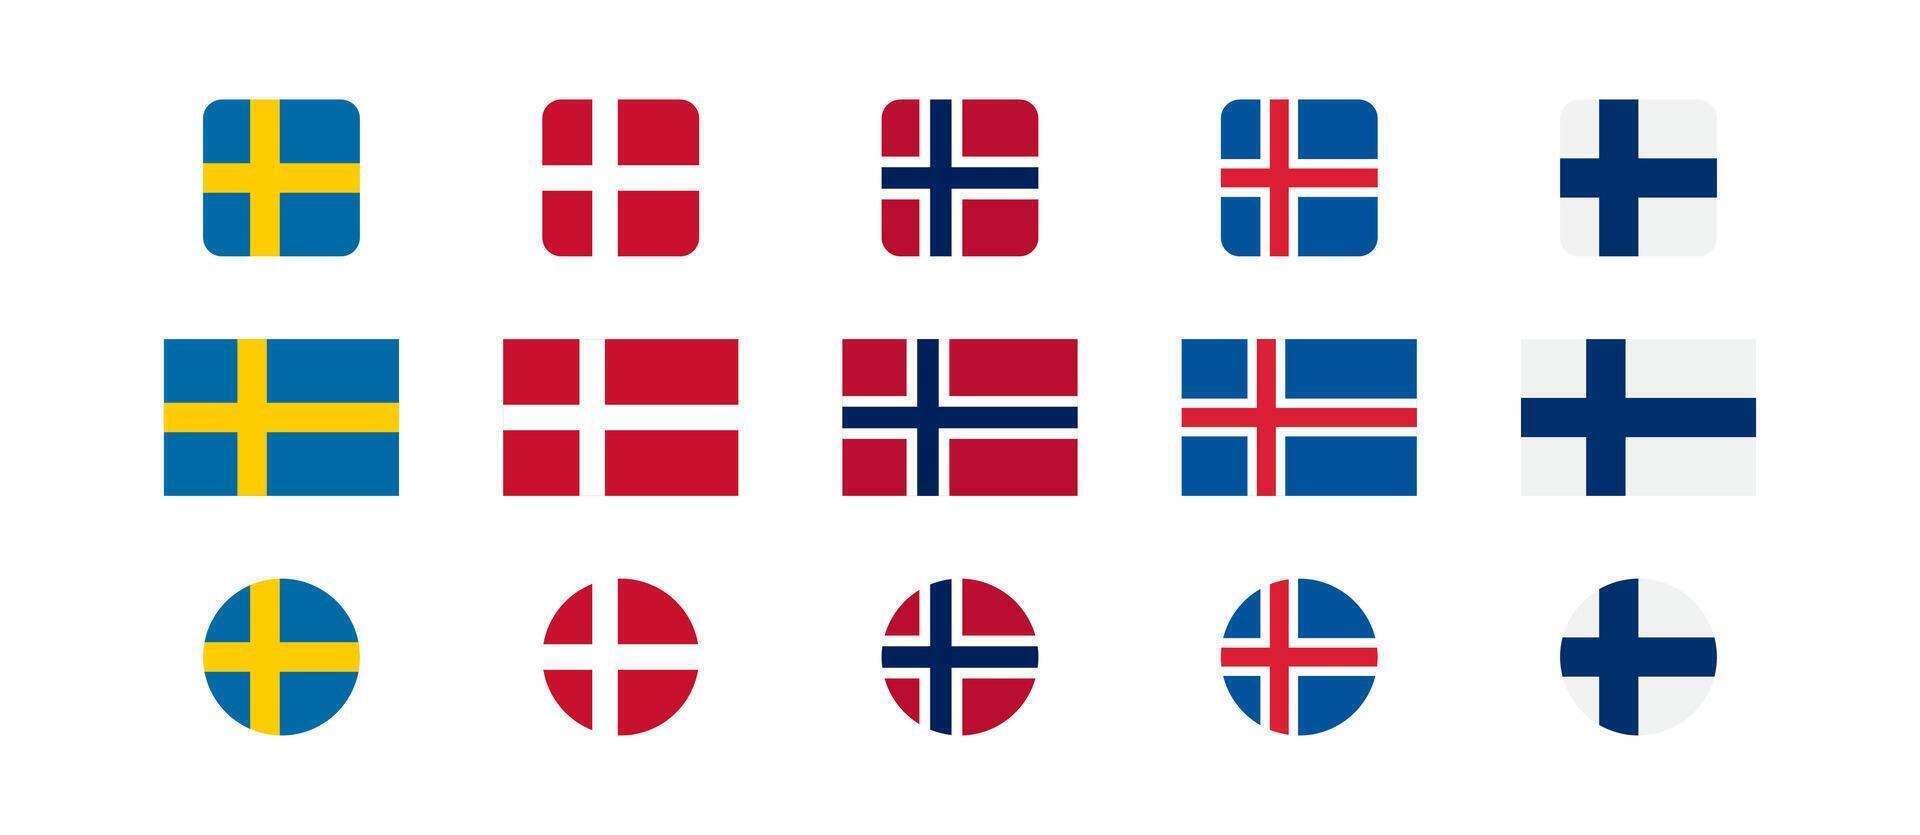 Escandinavia bandera país. Suecia, Finlandia, Dinamarca, Noruega, Islandia nacional Europa bandera vector. vector